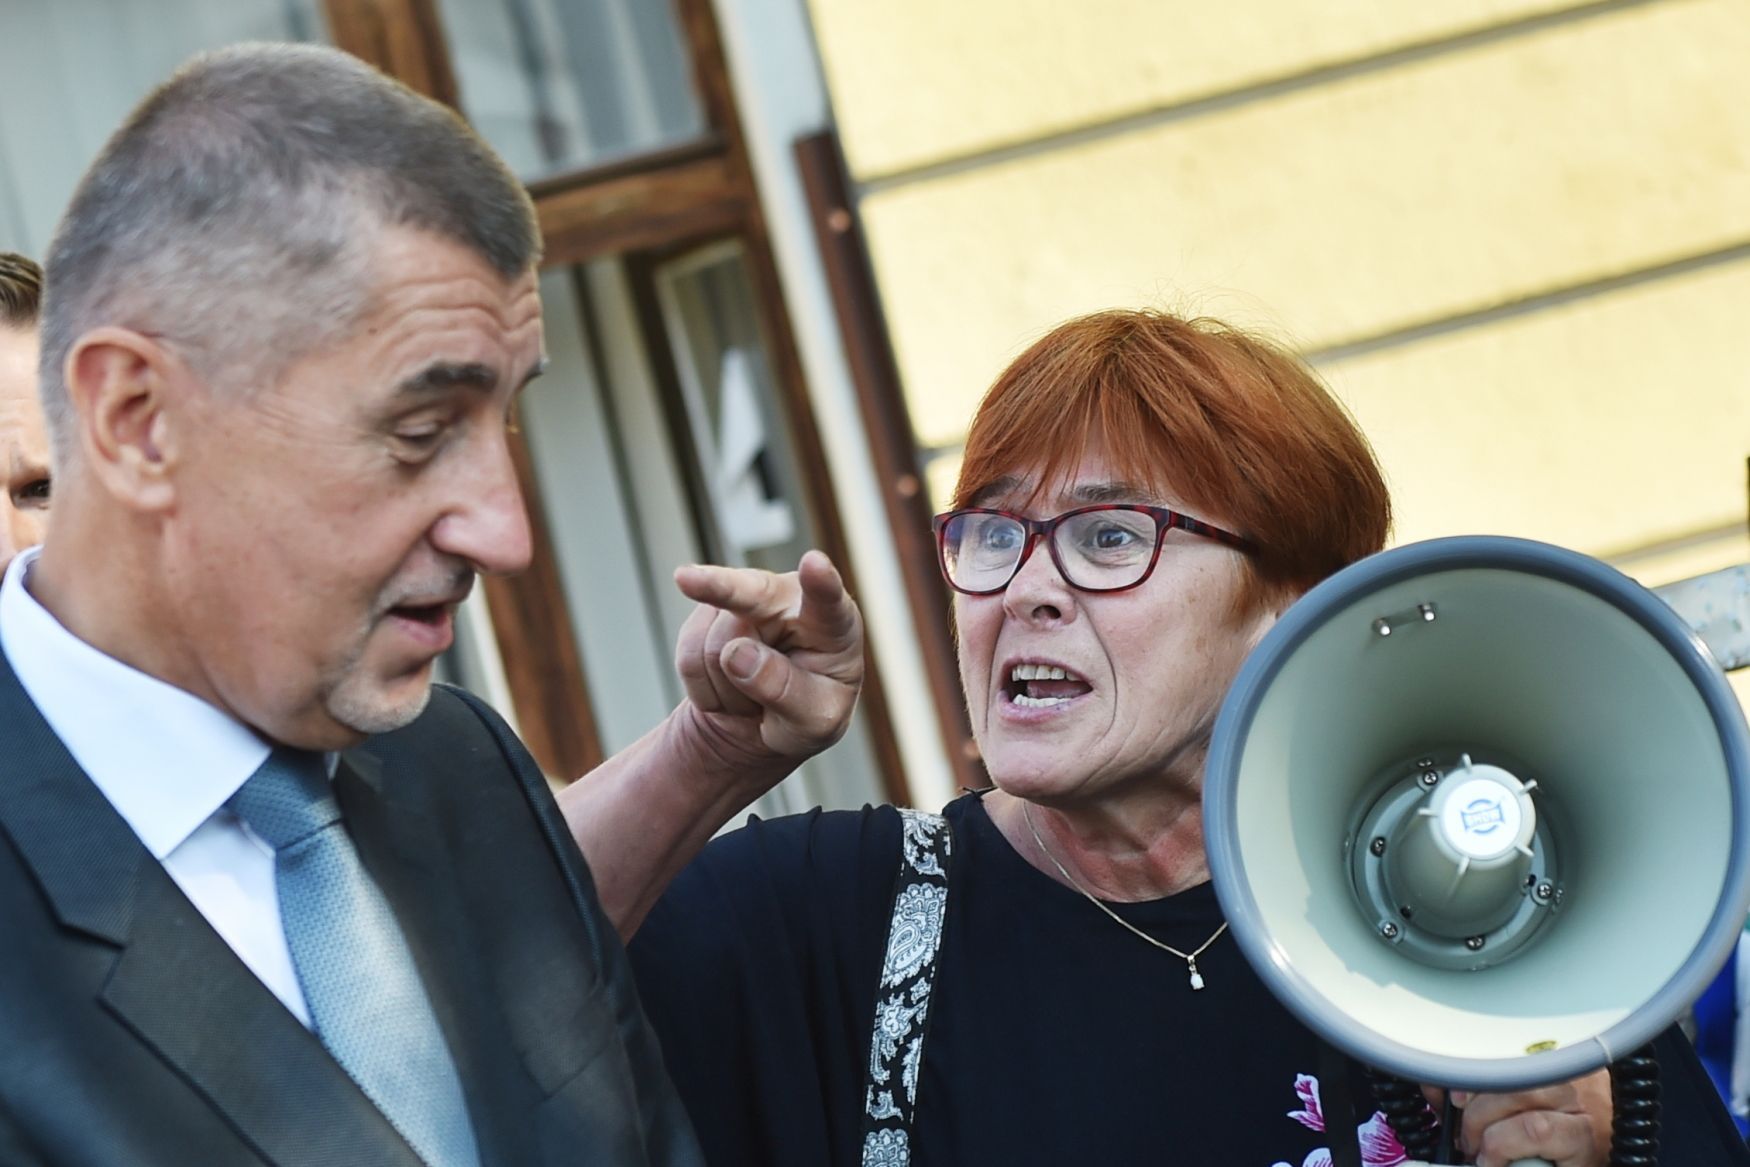 Žena protestuje proti premiérovi Andreji Babišovi v Českých Budějovicích.